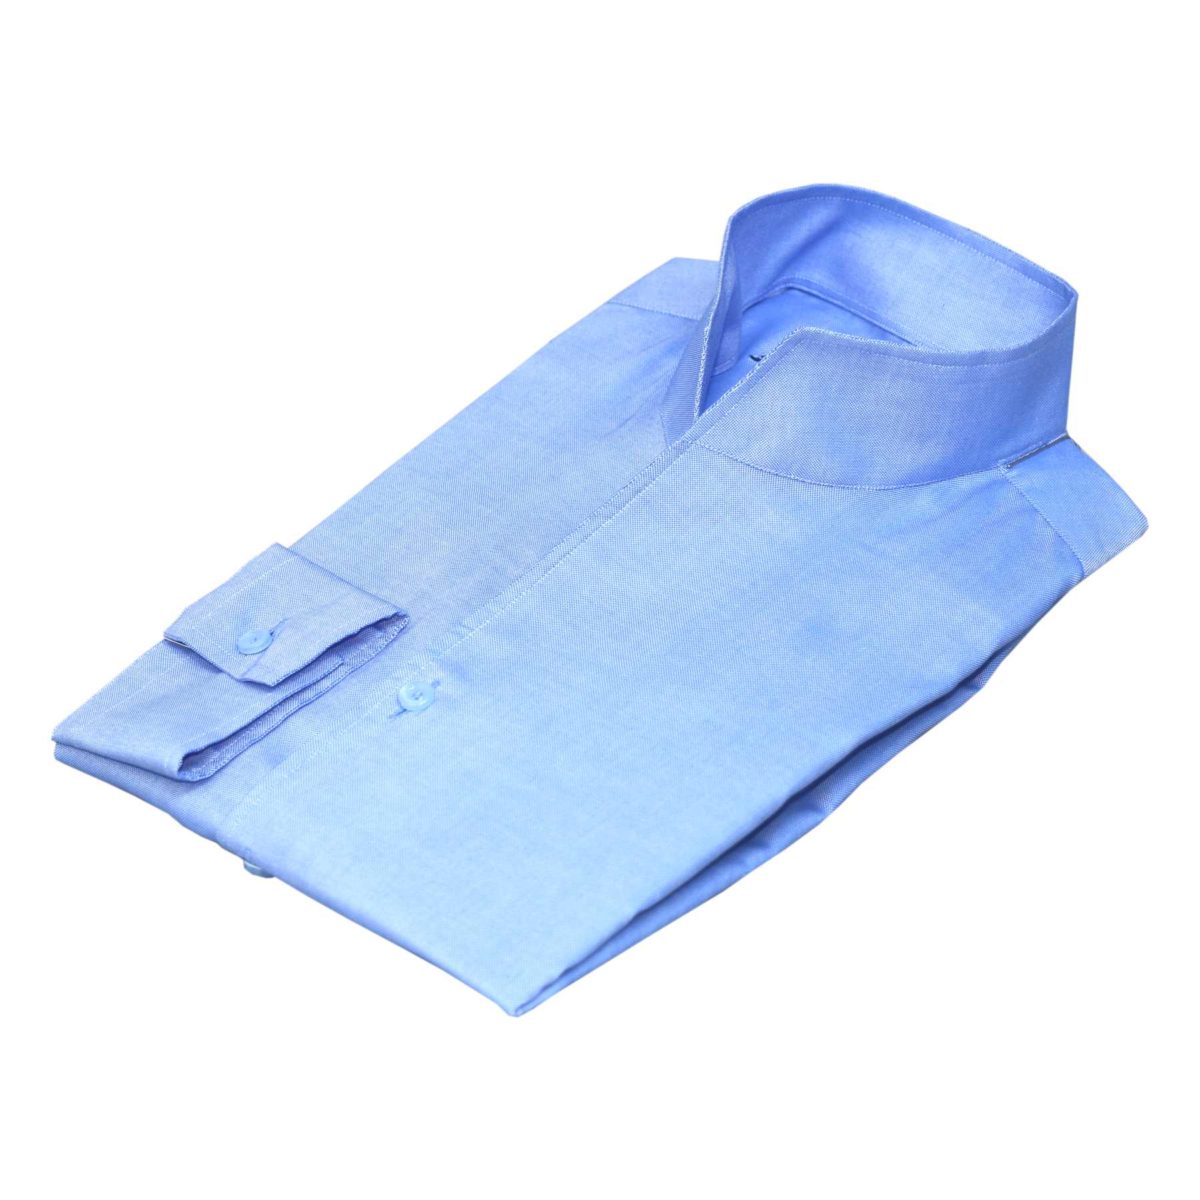 Blue high open collar shirt